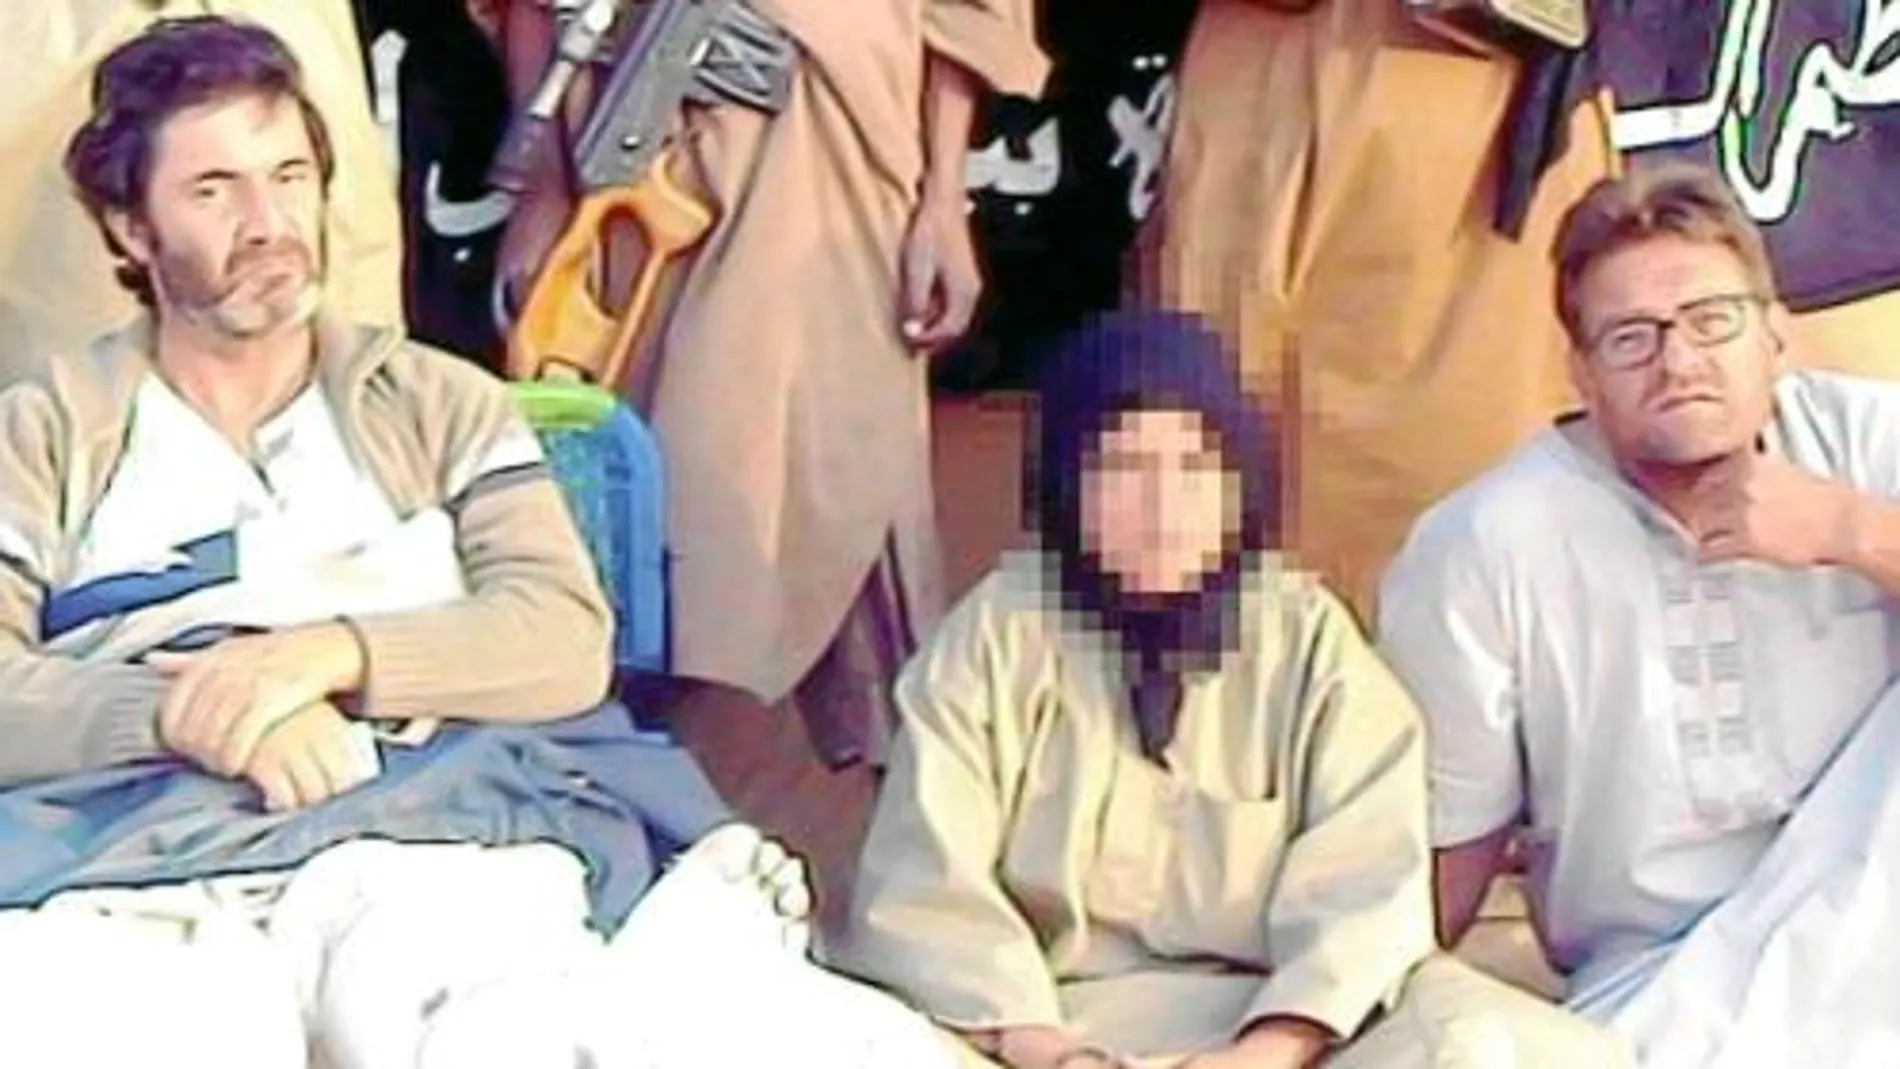 En la última foto difundida por AQMI aparecía Alicia Gámez, ya liberada, tocada con un pañuelo islámico